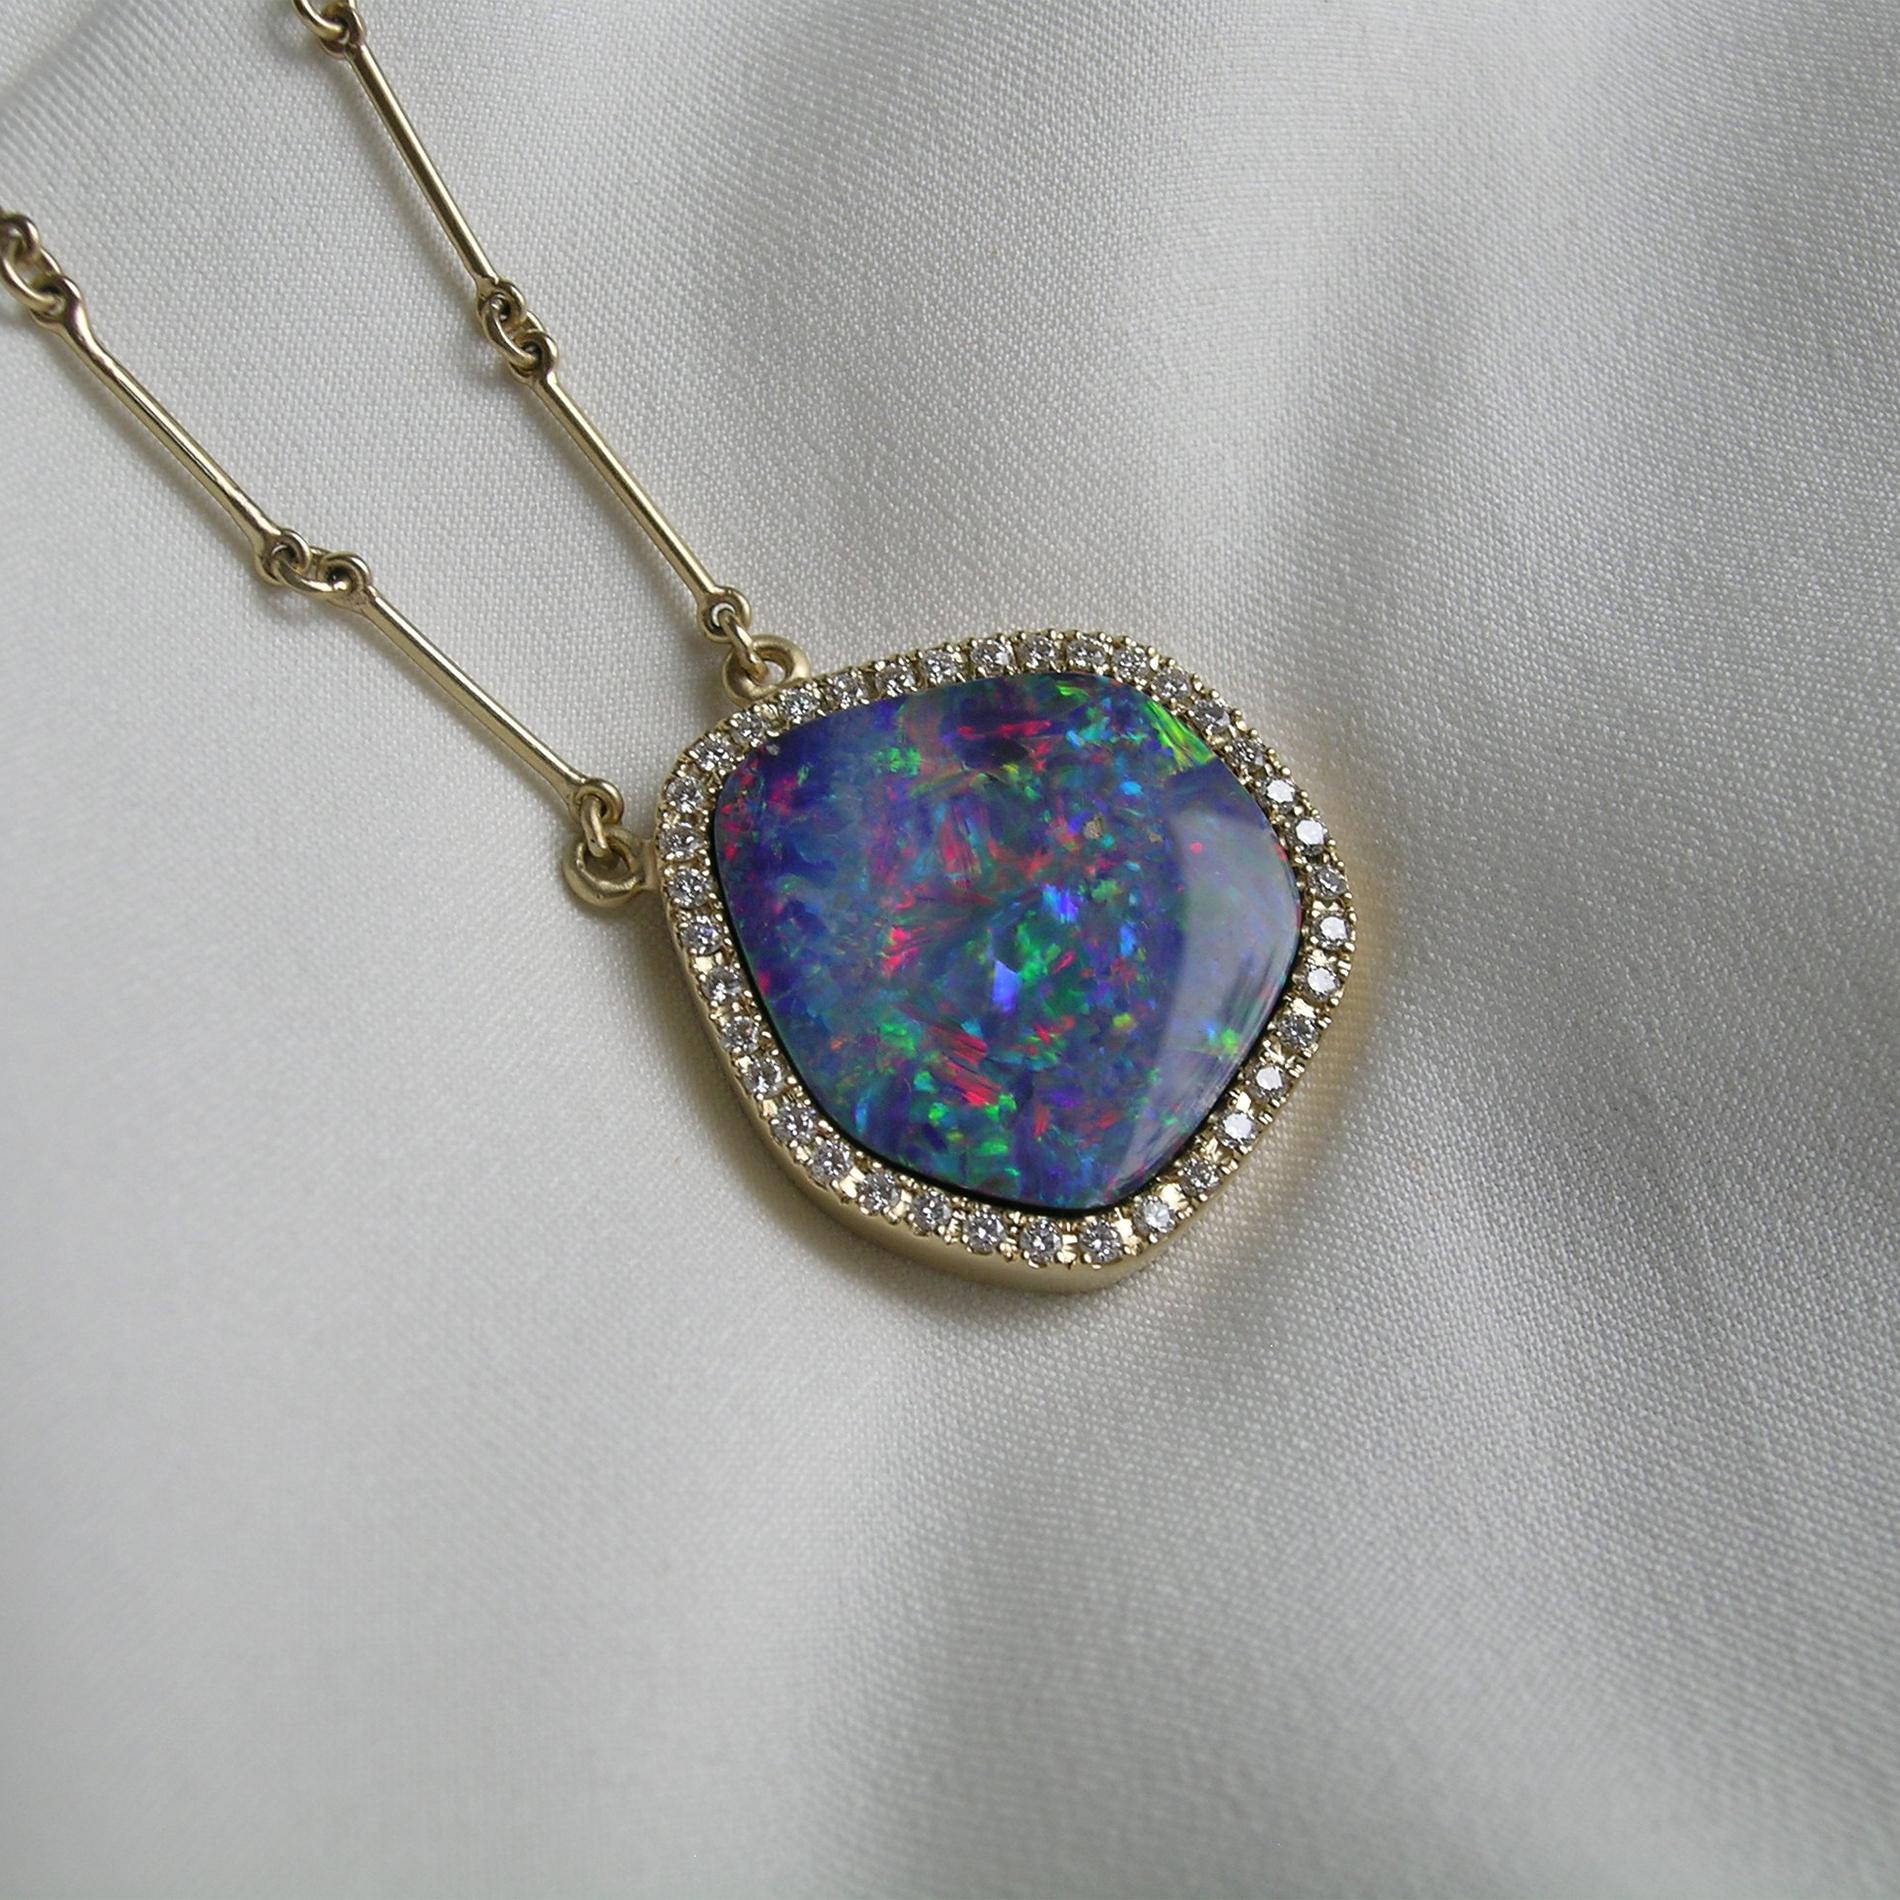 Brilliant Cut 18k Gold, Diamond & Boulder Opal Pendant Necklace For Sale